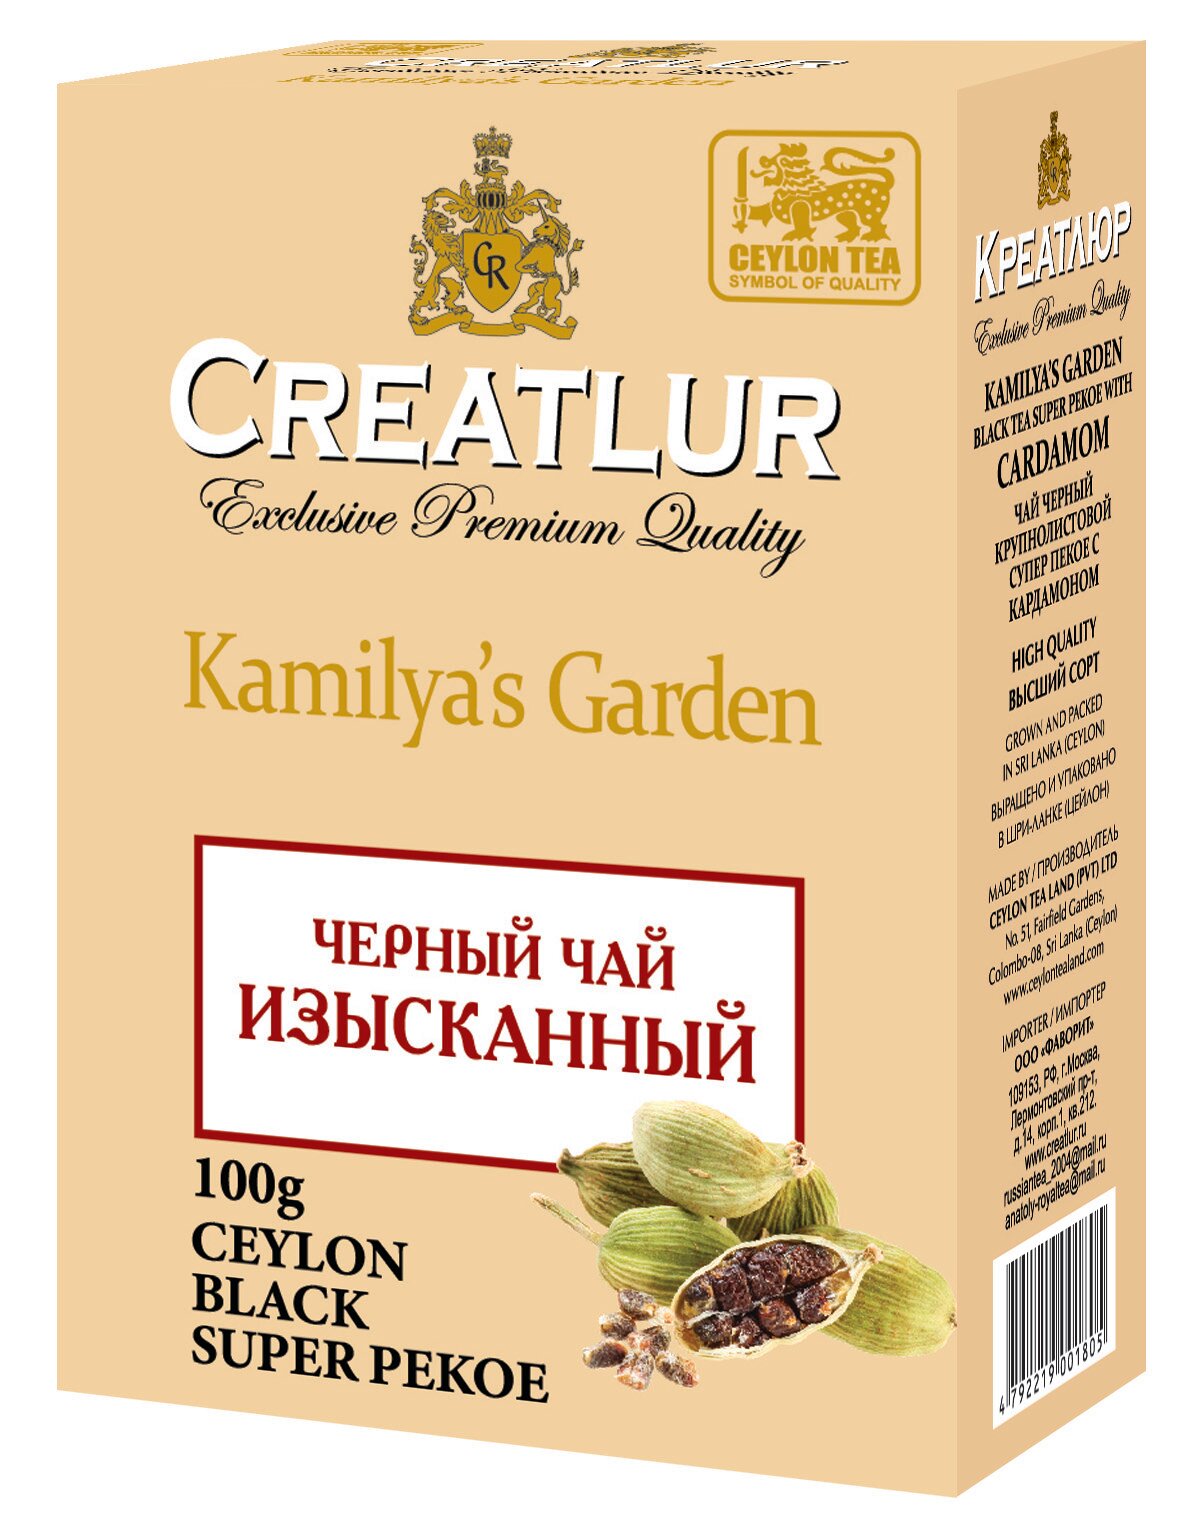 Чай Черный Изысканный с кардамоном Creatlur Kamilya's Garden, 100г - фотография № 1